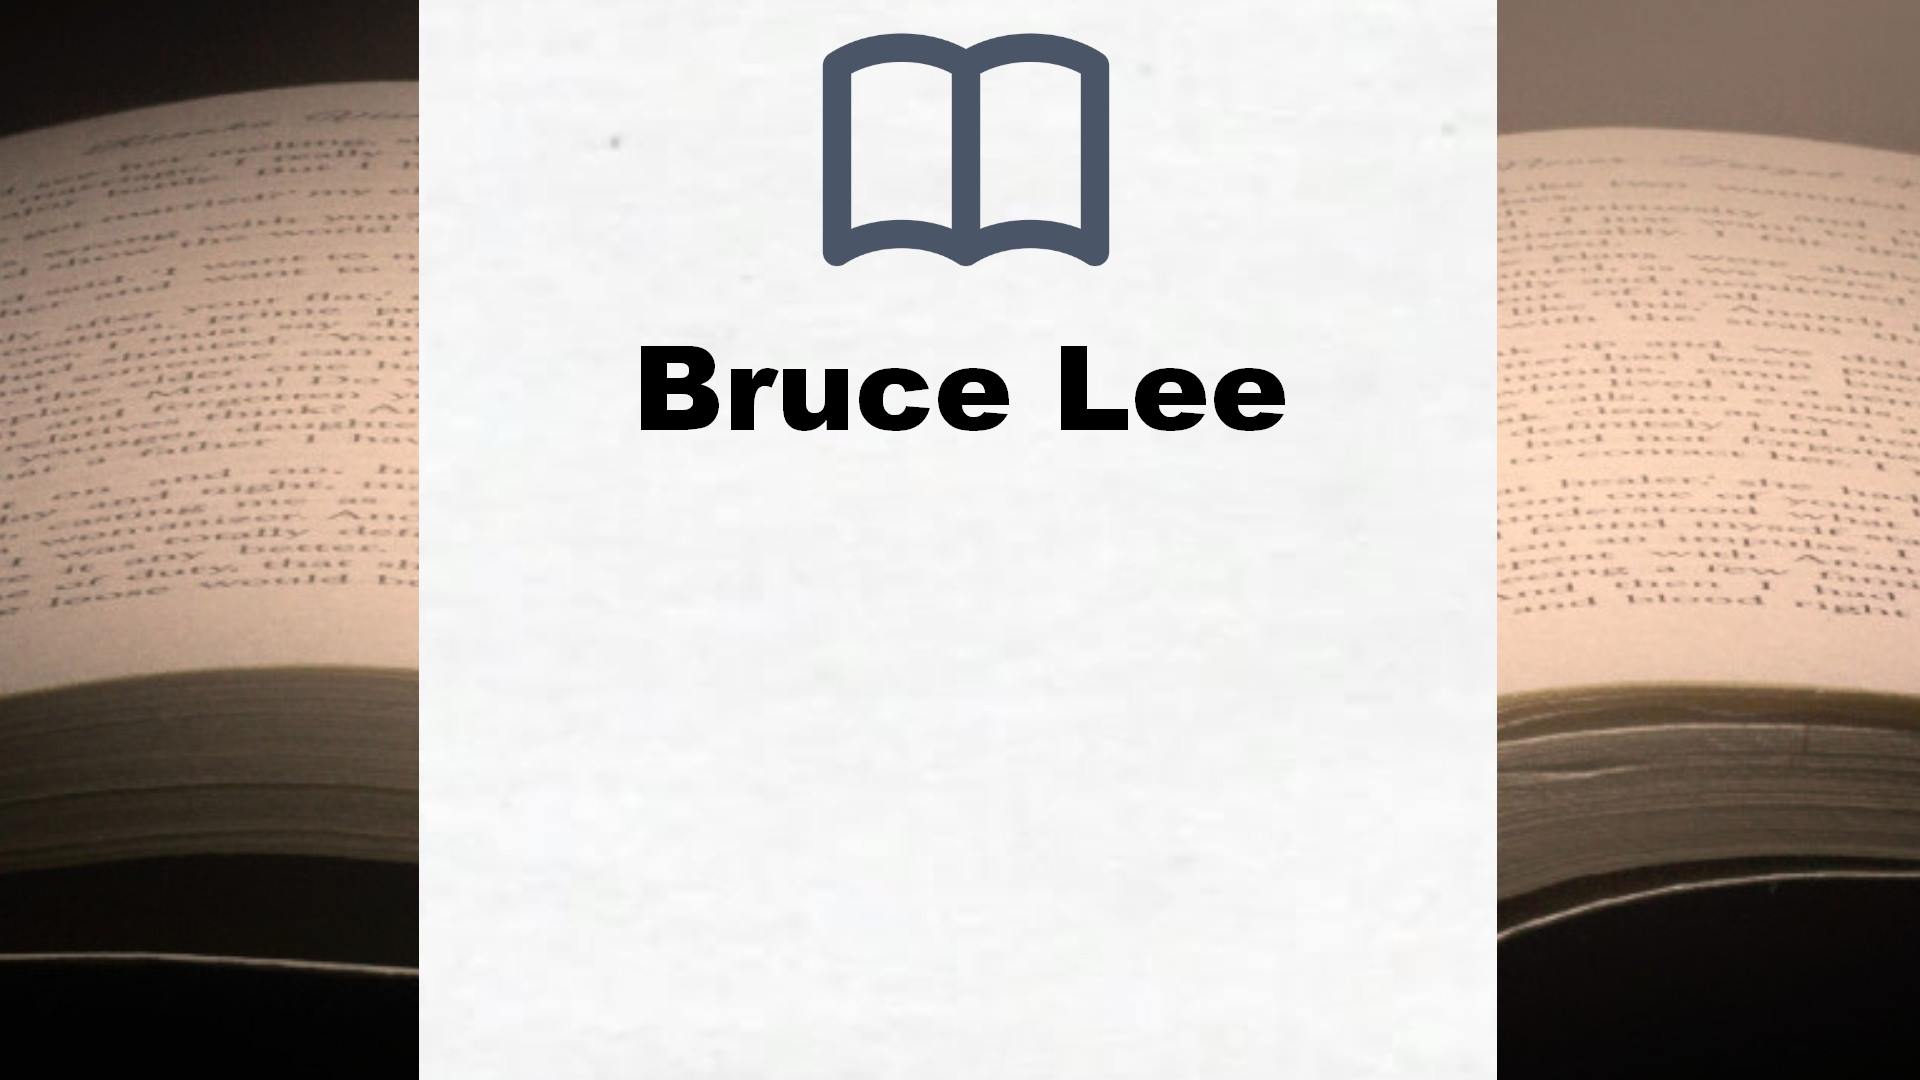 Bücher über Bruce Lee